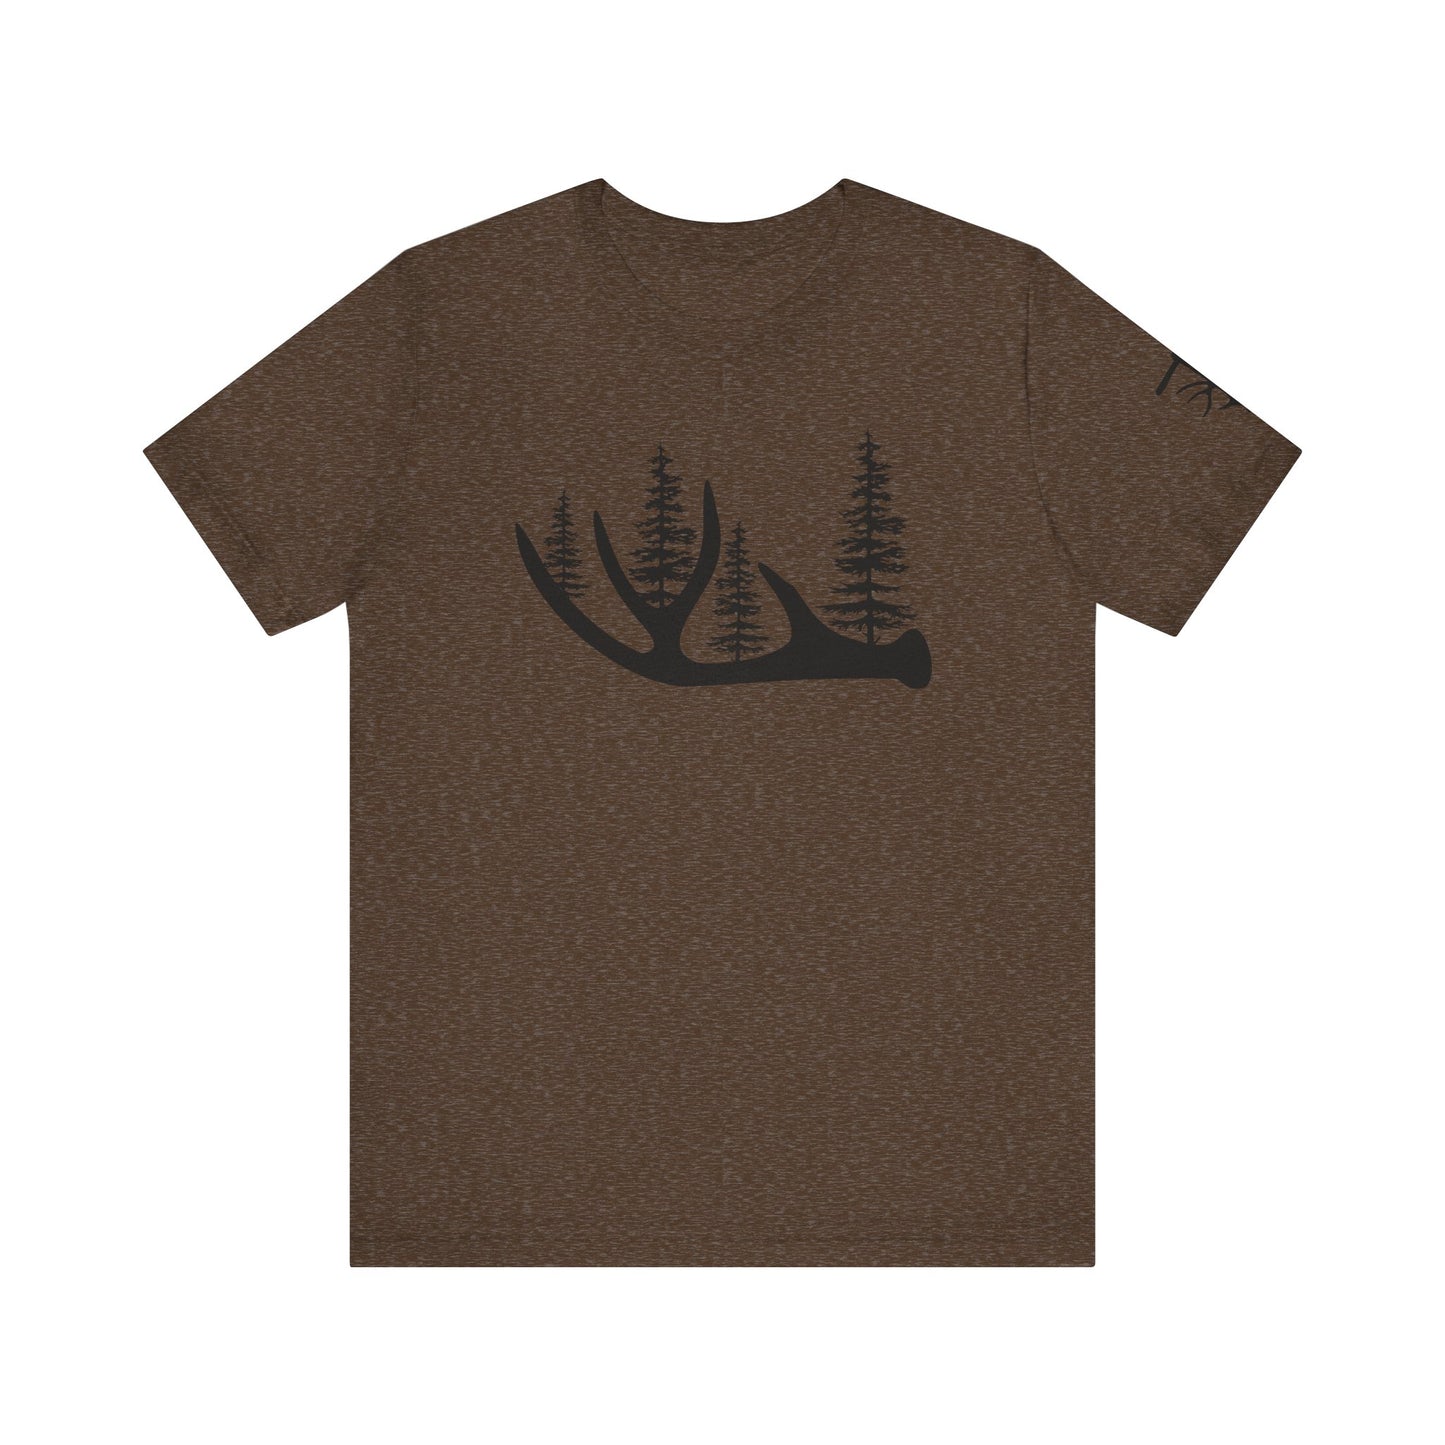 Antler Tree T-Shirt